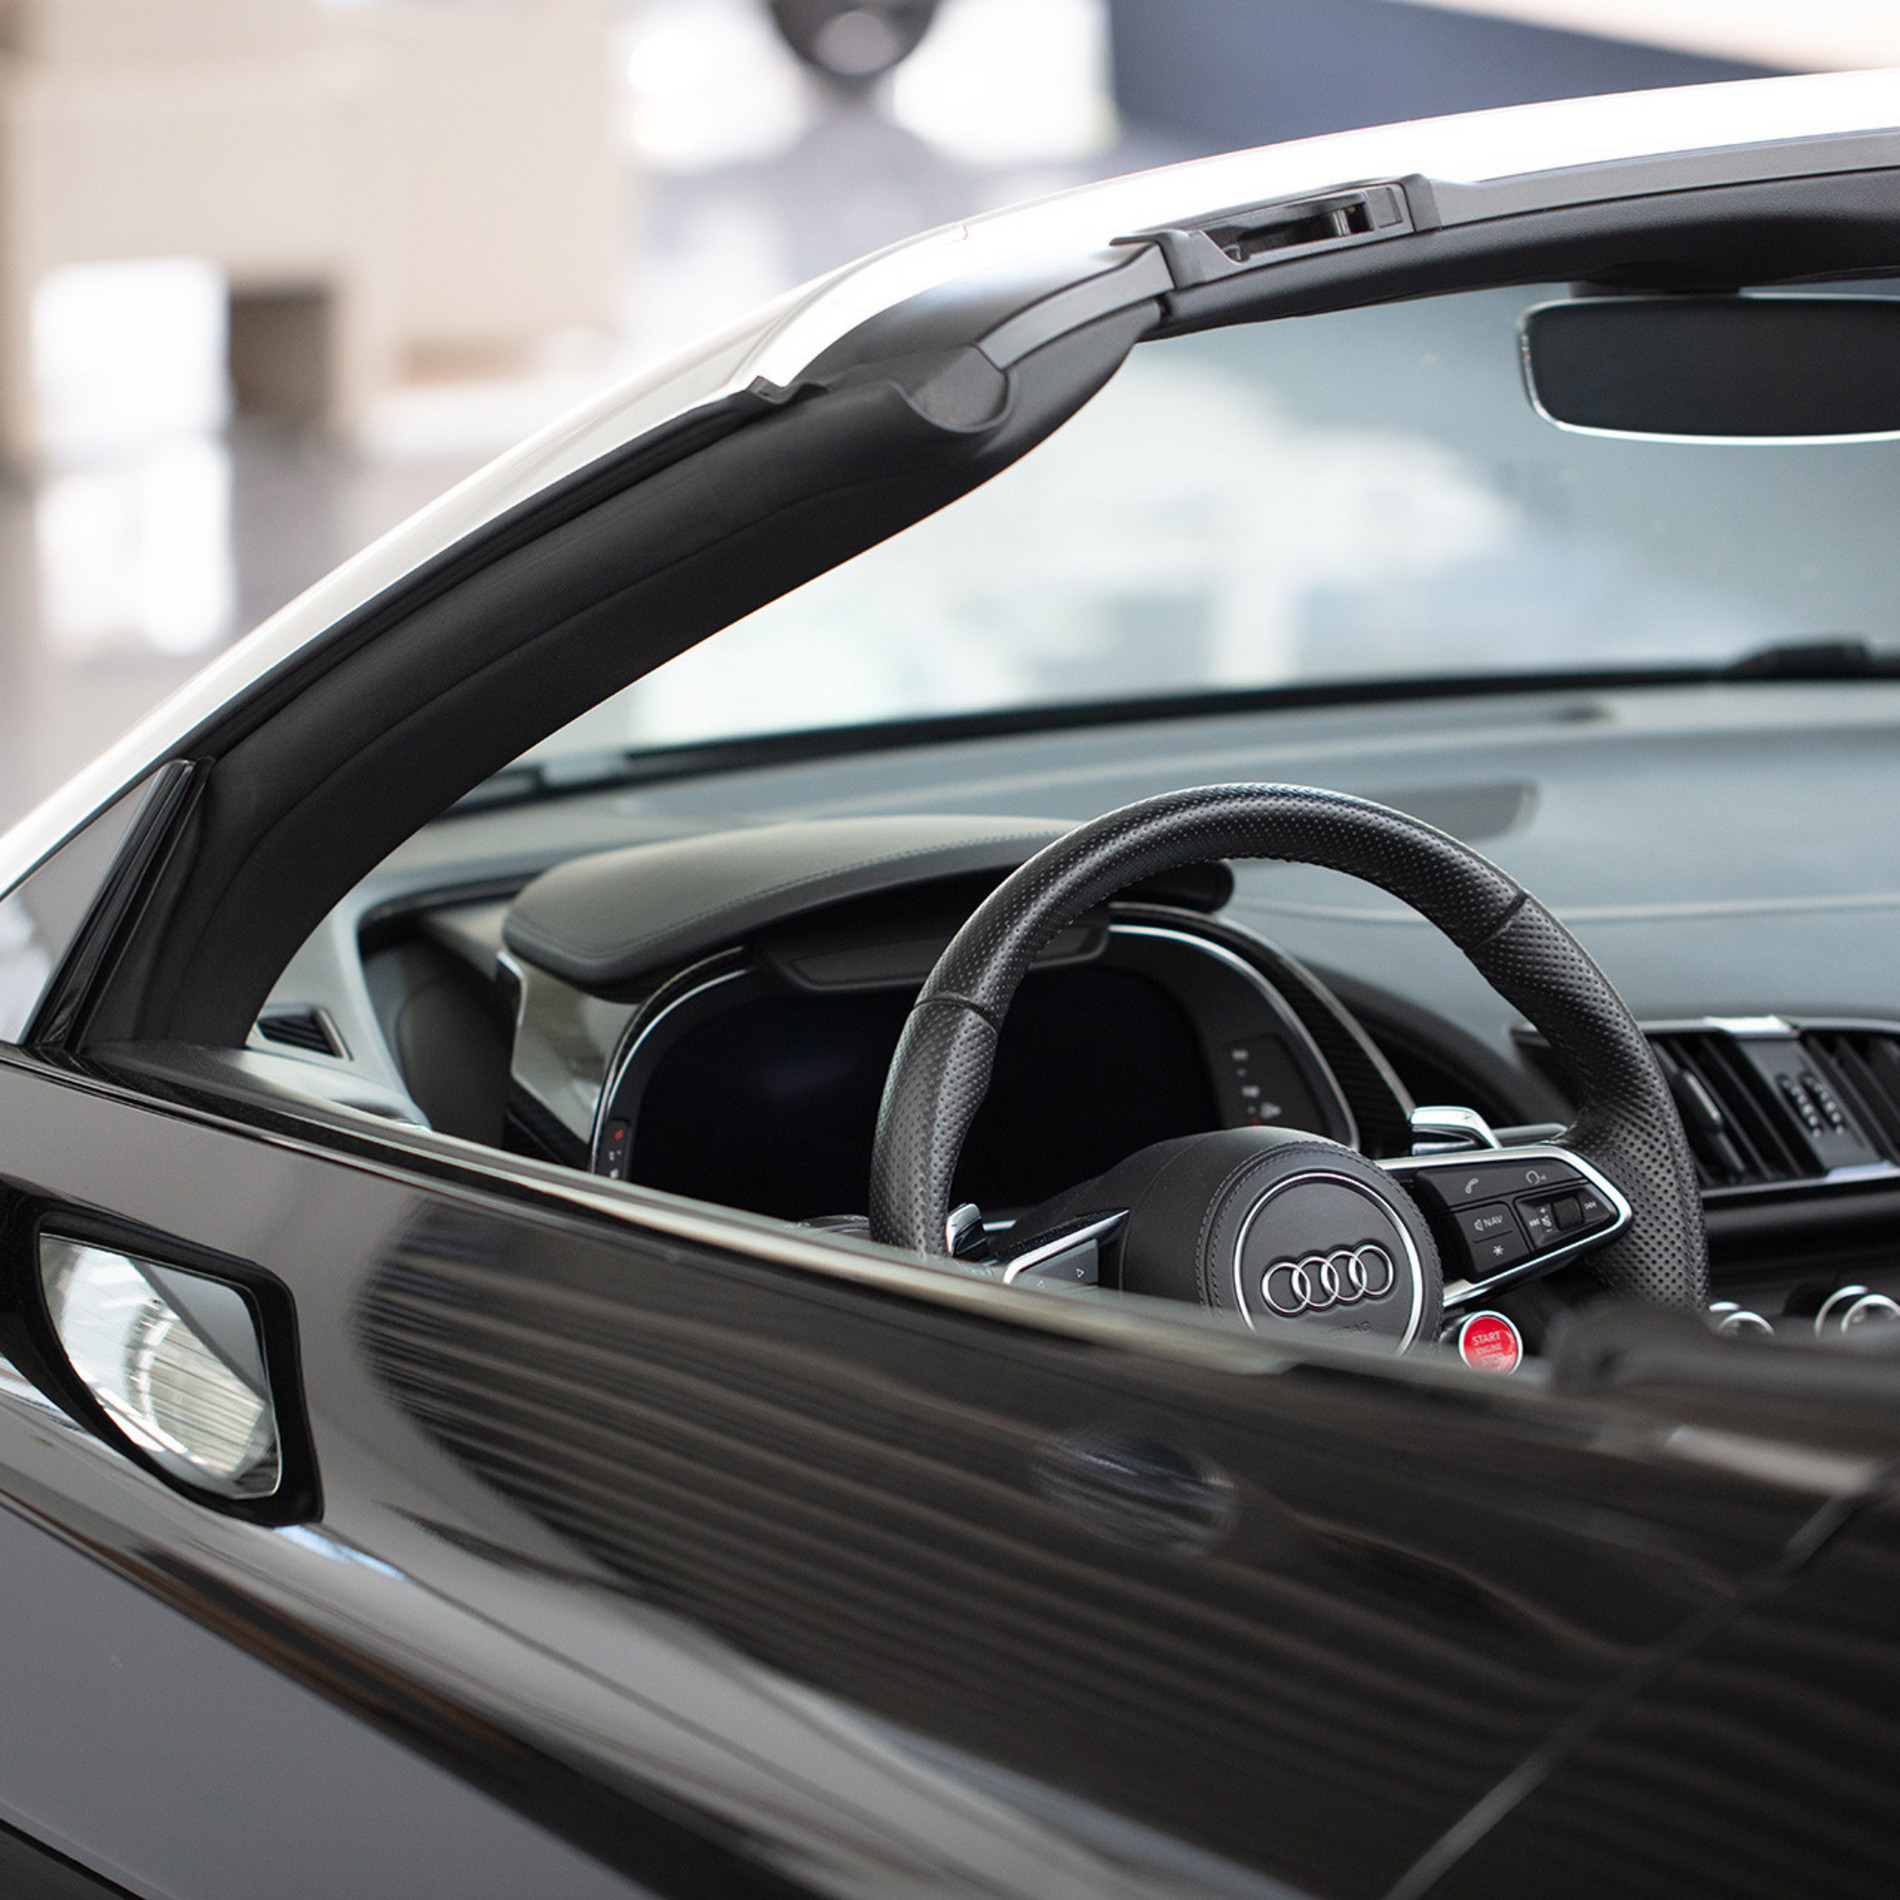 Lifesteil - Audi R8 Autovermietung